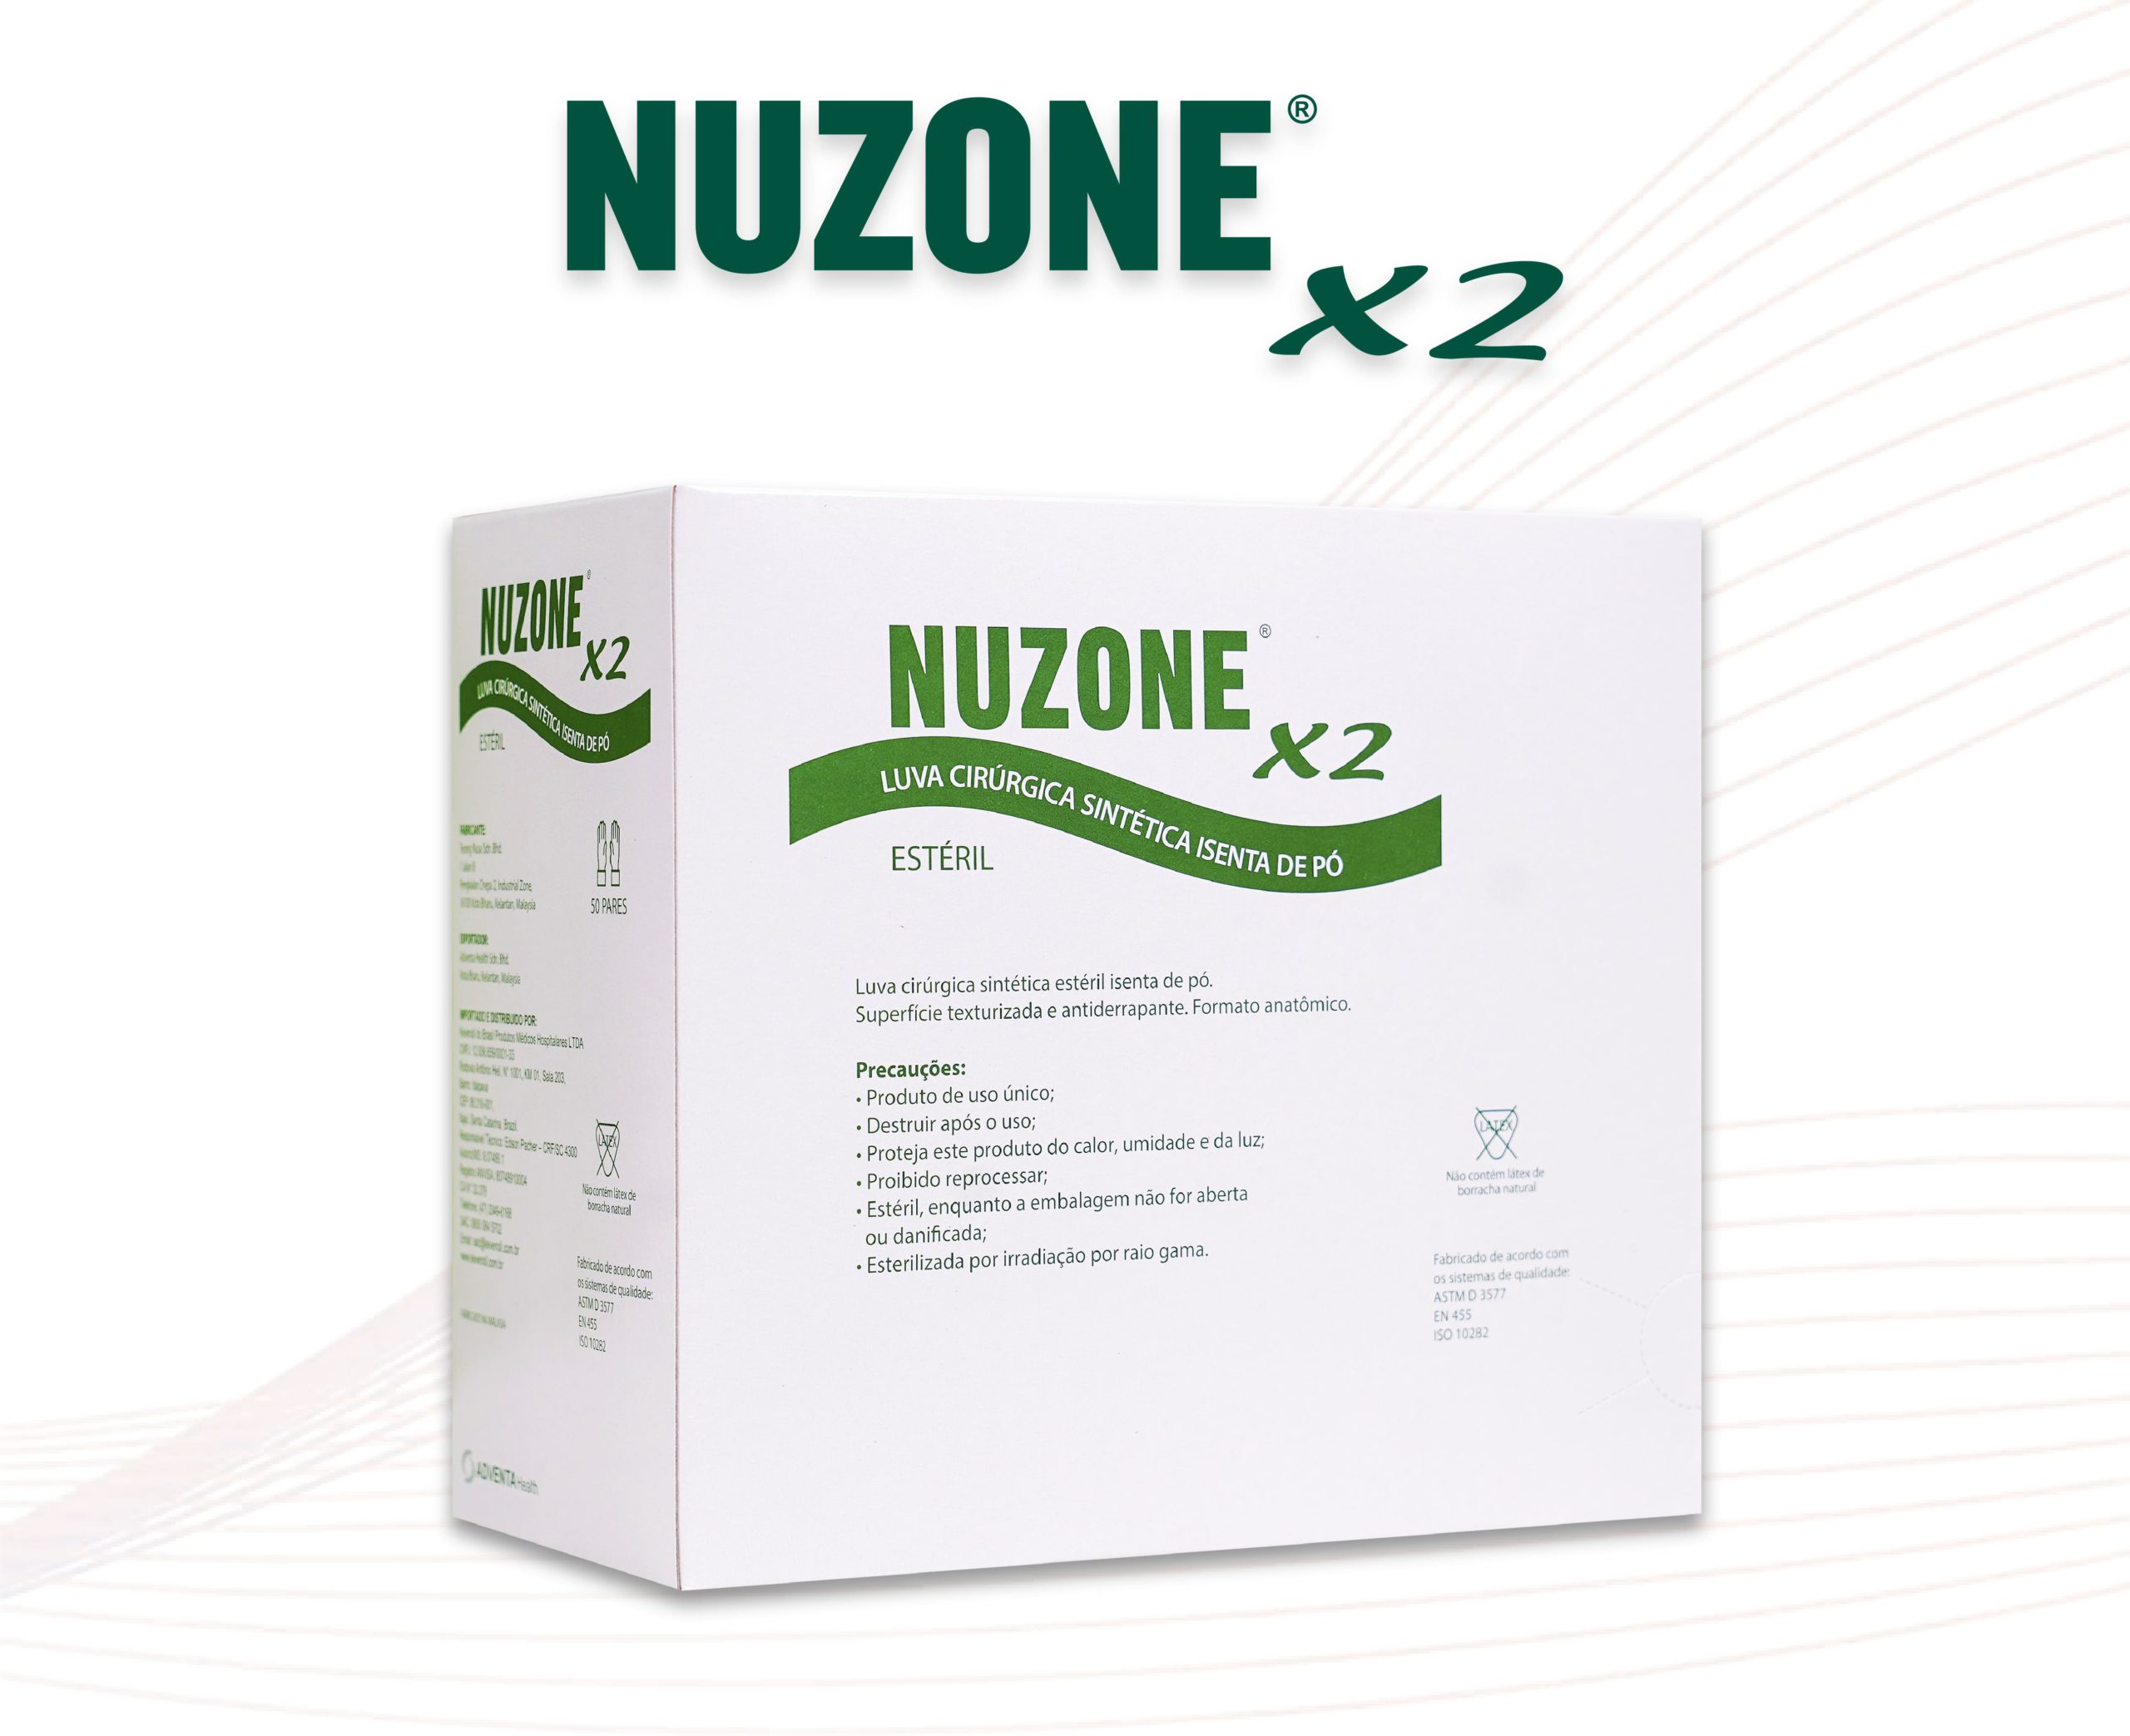 Luvas cirúrgicas NUZONE X2 – estéreis, sintéticas, isentas de pó